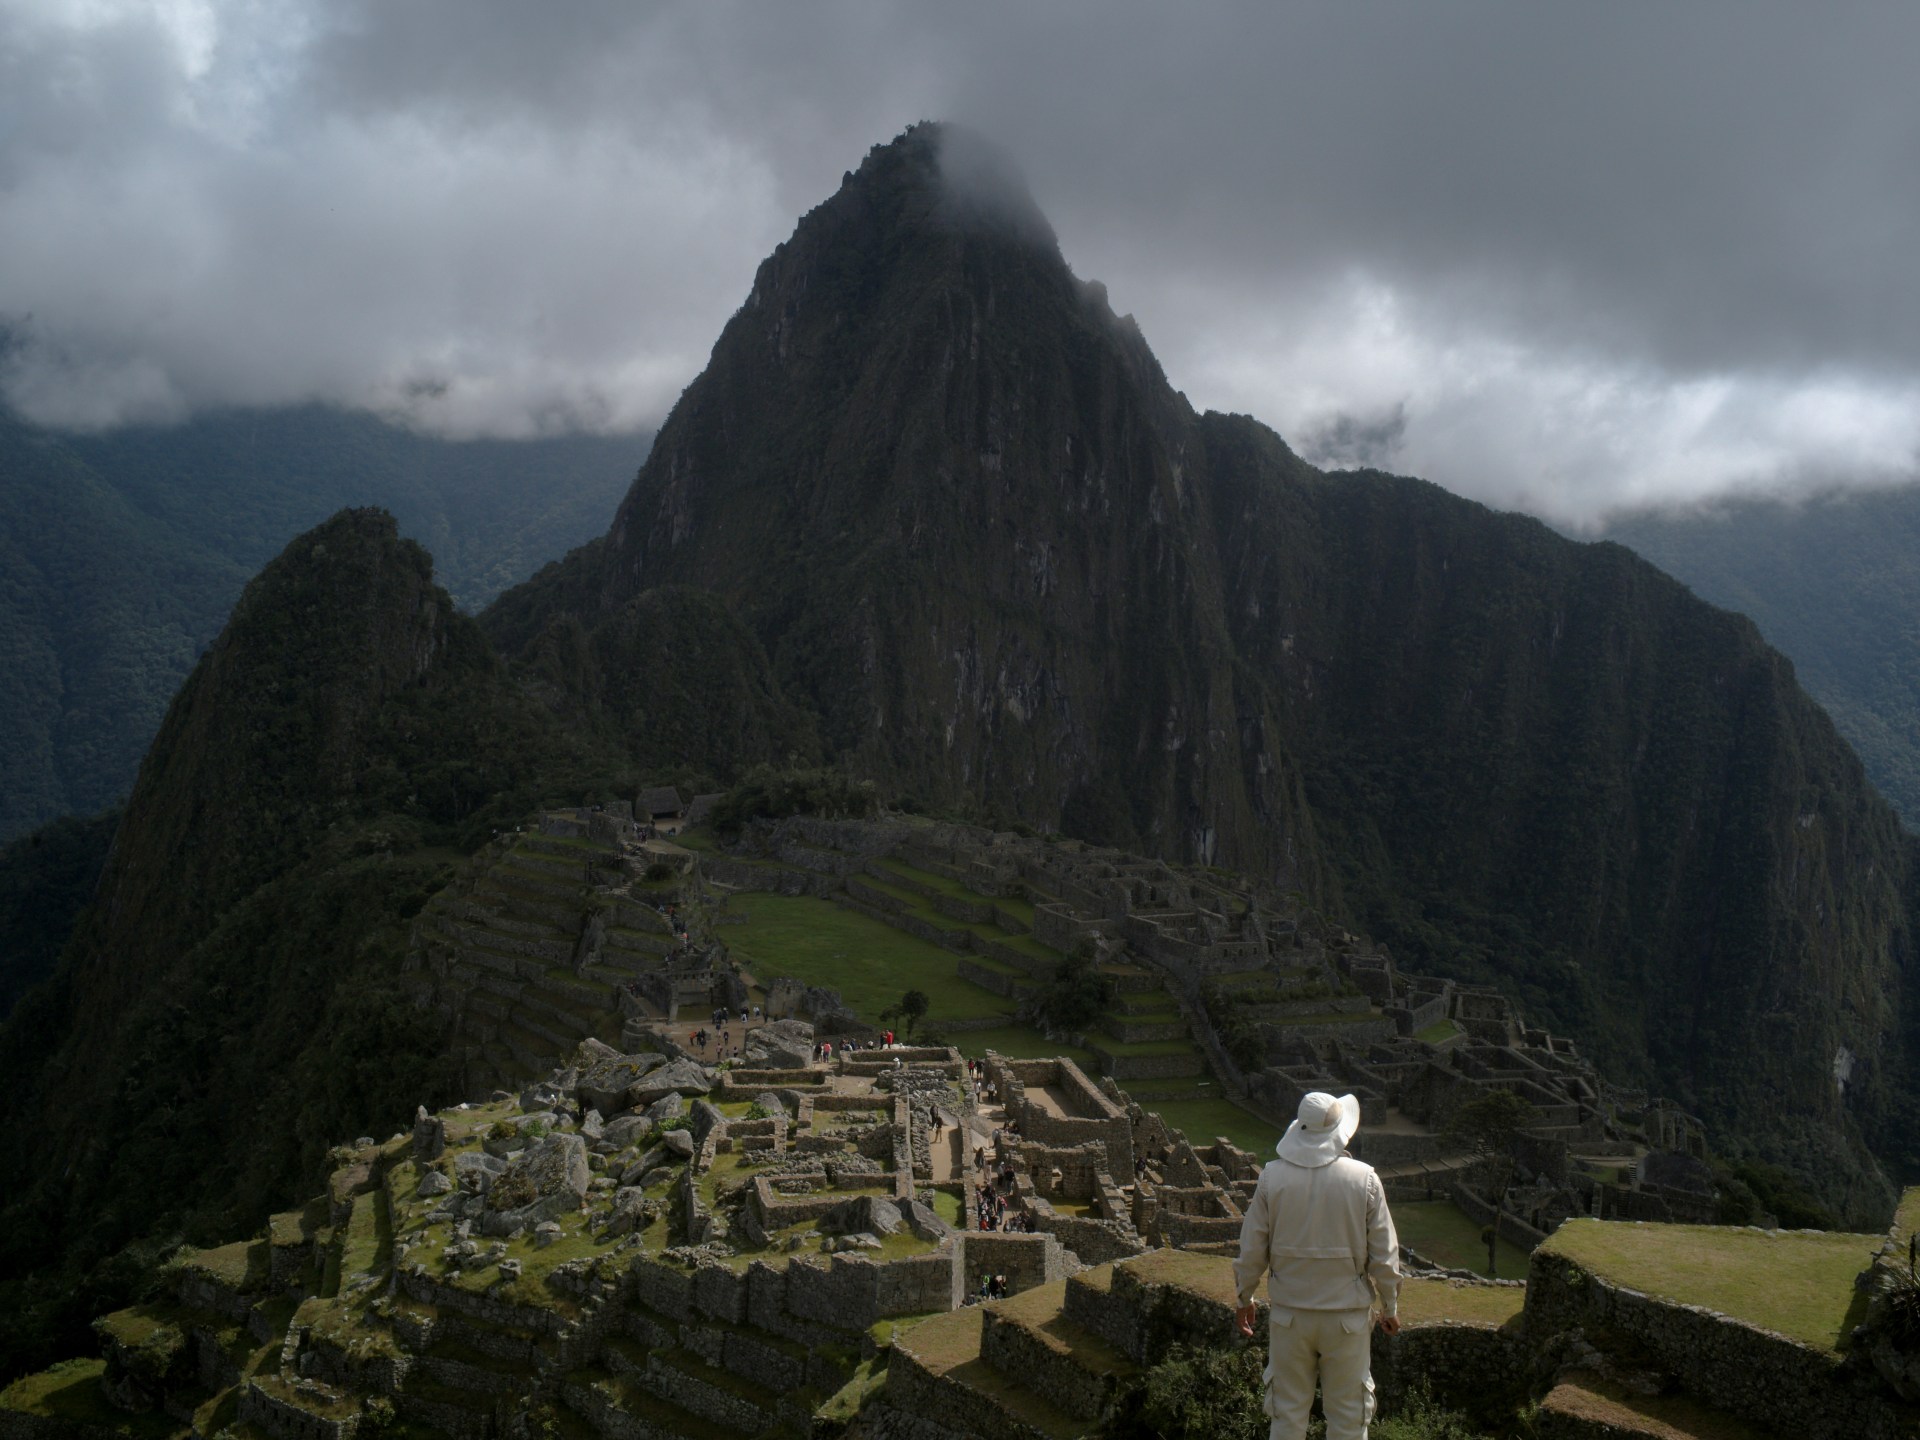 Peru closes Machu Picchu site as anti-govt protests continue